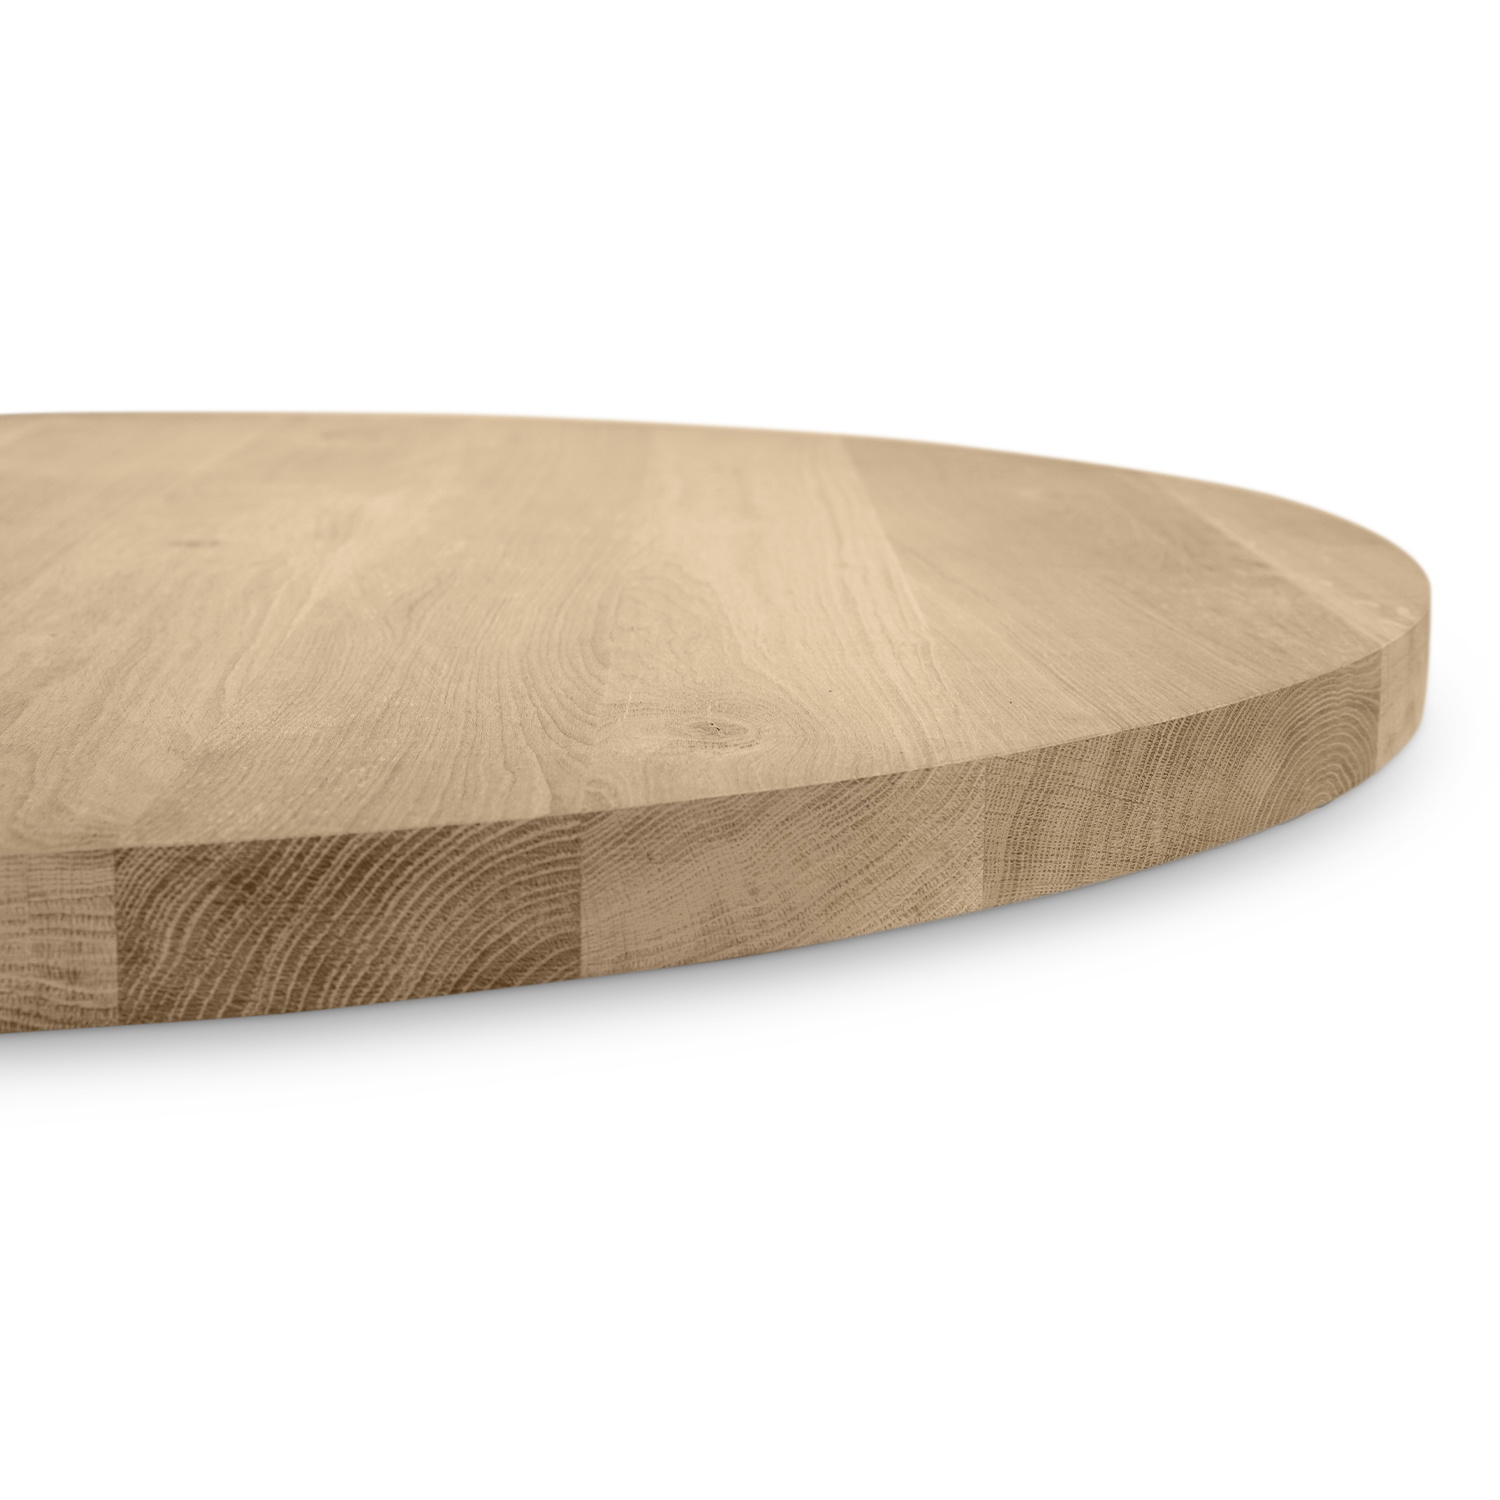  Tischplatte Wildeiche rund - 4 cm dick - Asteiche (rustikal) - Eiche Tischplatte rund massiv - Verleimt & künstlich getrocknet (HF 8-12%)